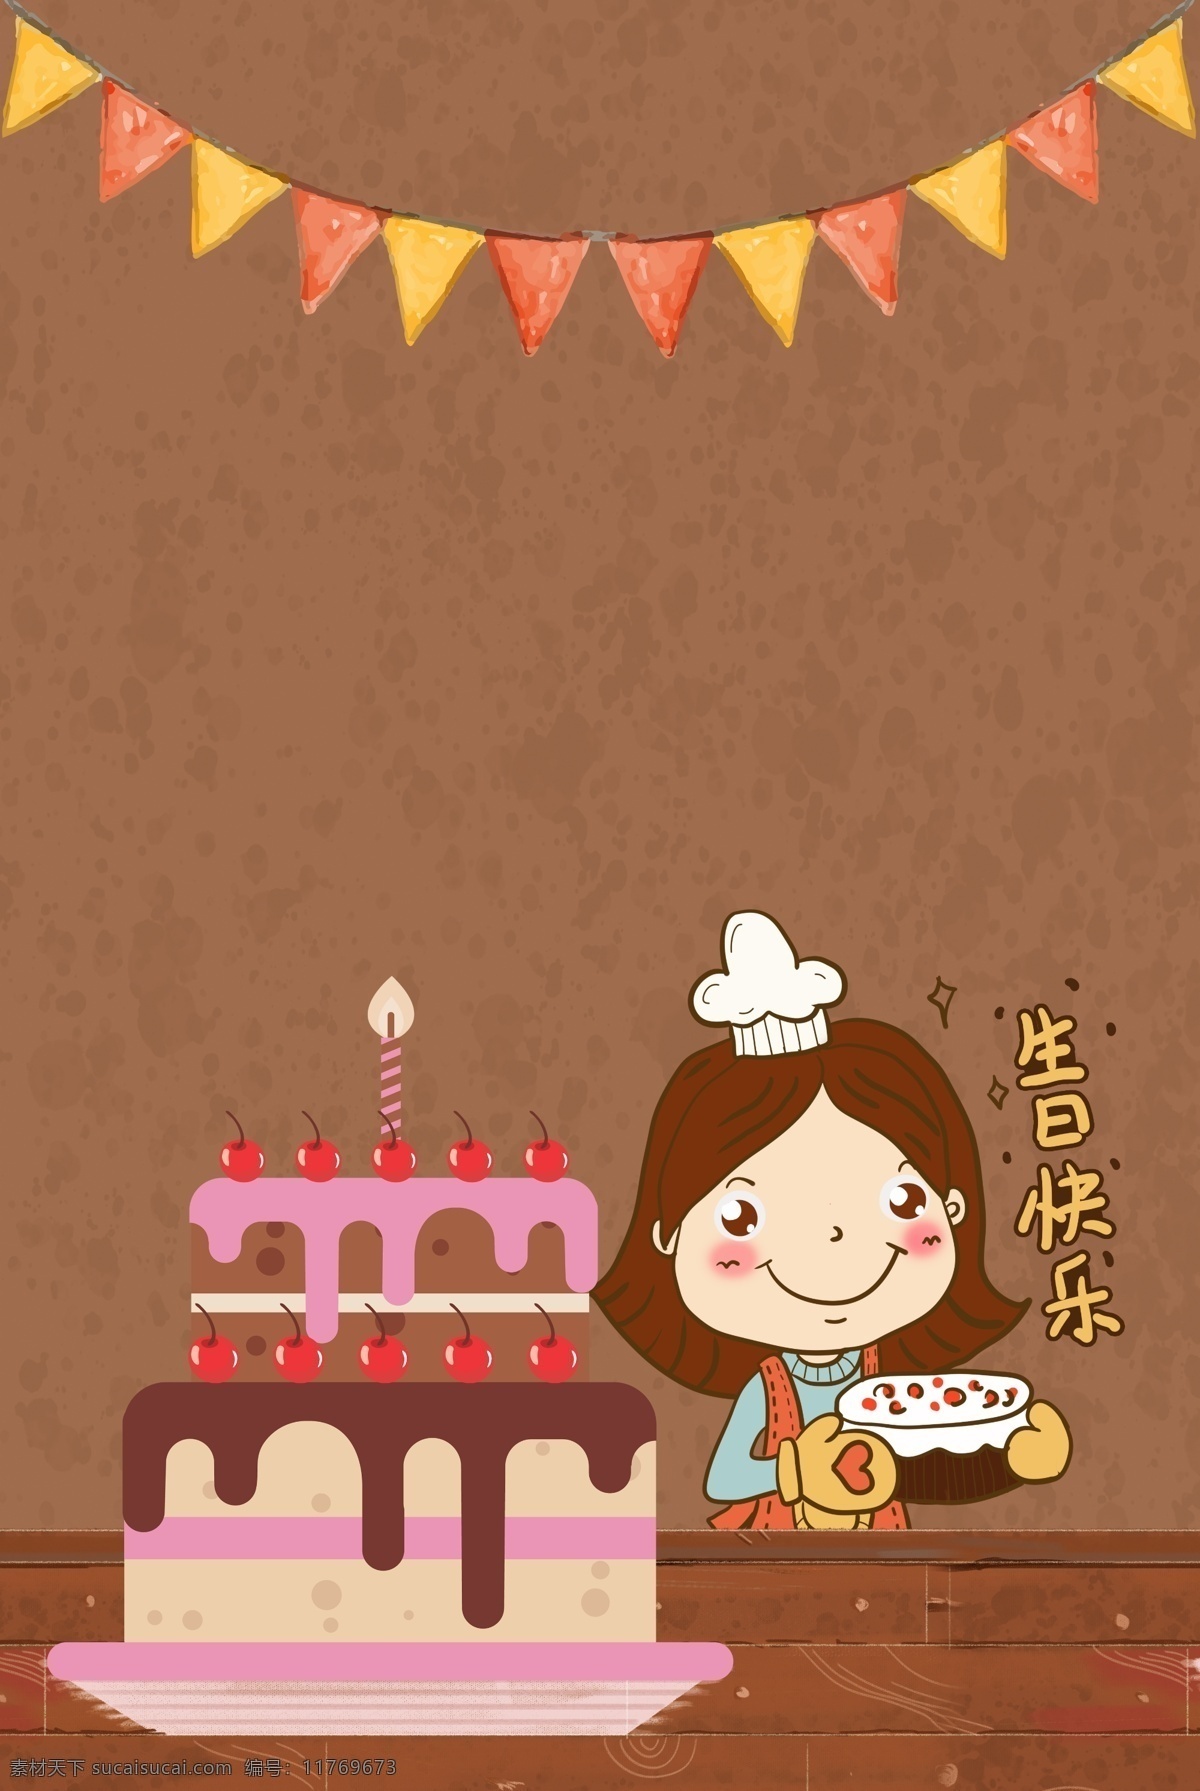 生日 主题 海报 背景 生日主题海报 蜡烛 彩旗 浪漫 幸福 生日蛋糕 生日快乐